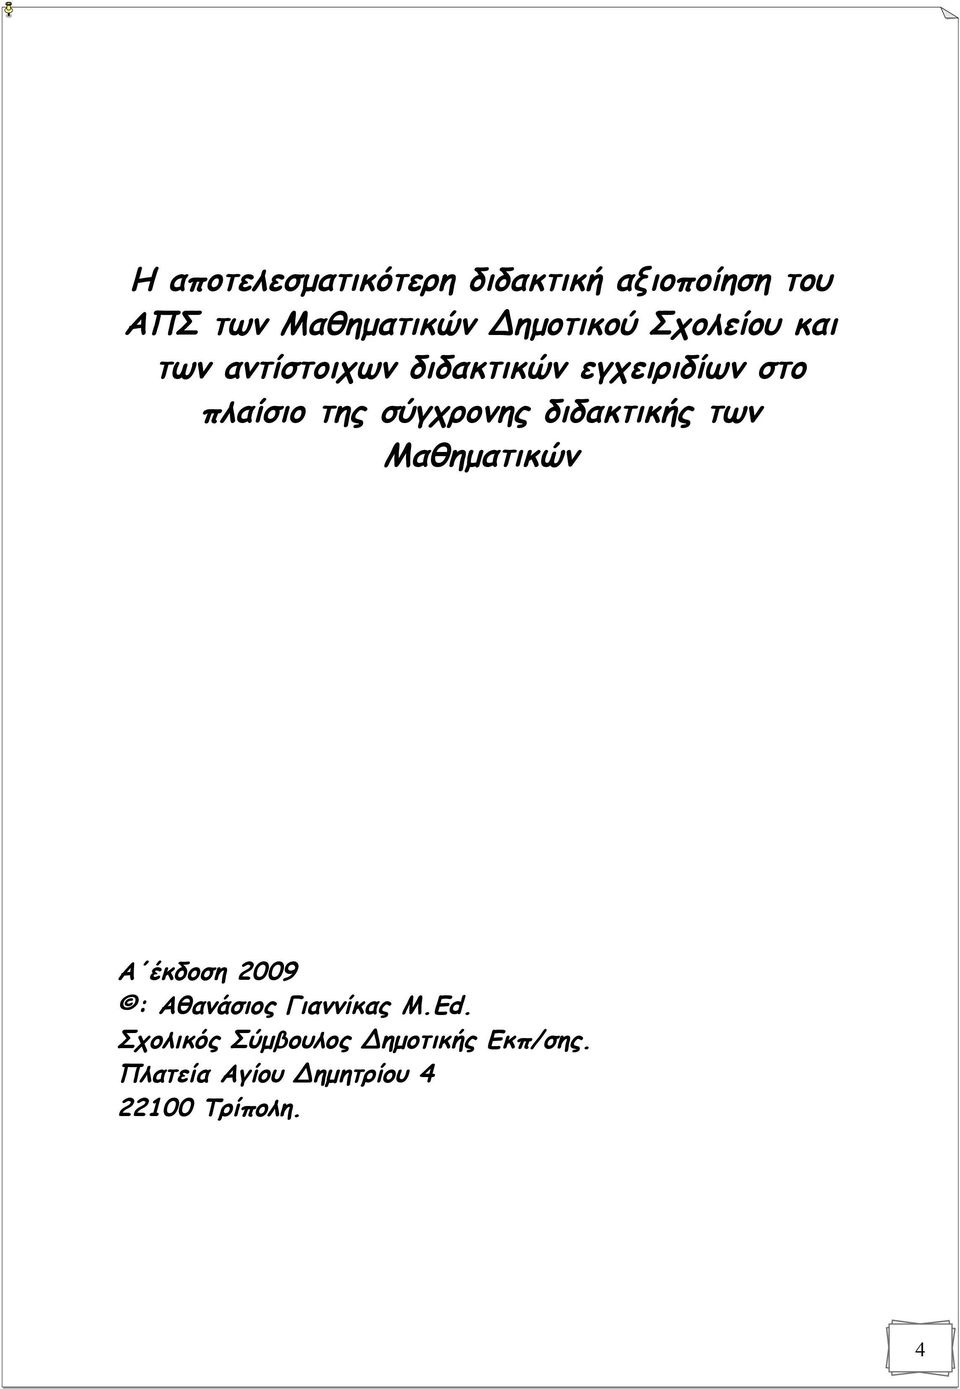 σύγχρονης διδακτικής των Μαθηματικών Α έκδοση 2009 : Αθανάσιος Γιαννίκας M.